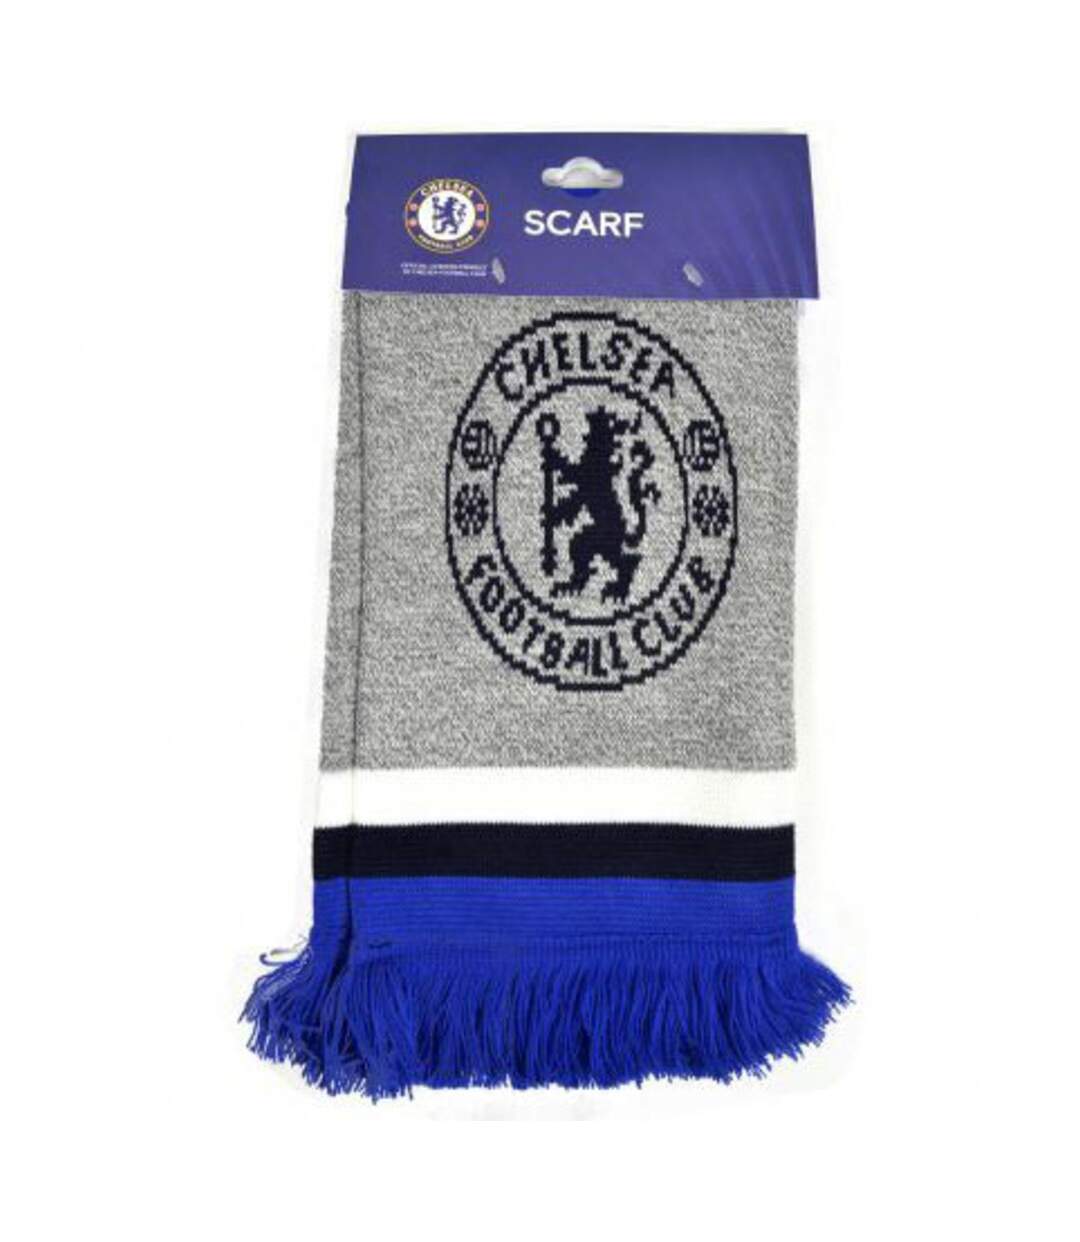 Chelsea FC - Écharpe JACQUARD (Gris / Bleu foncé / Blanc) (Taille unique) - UTBS3098